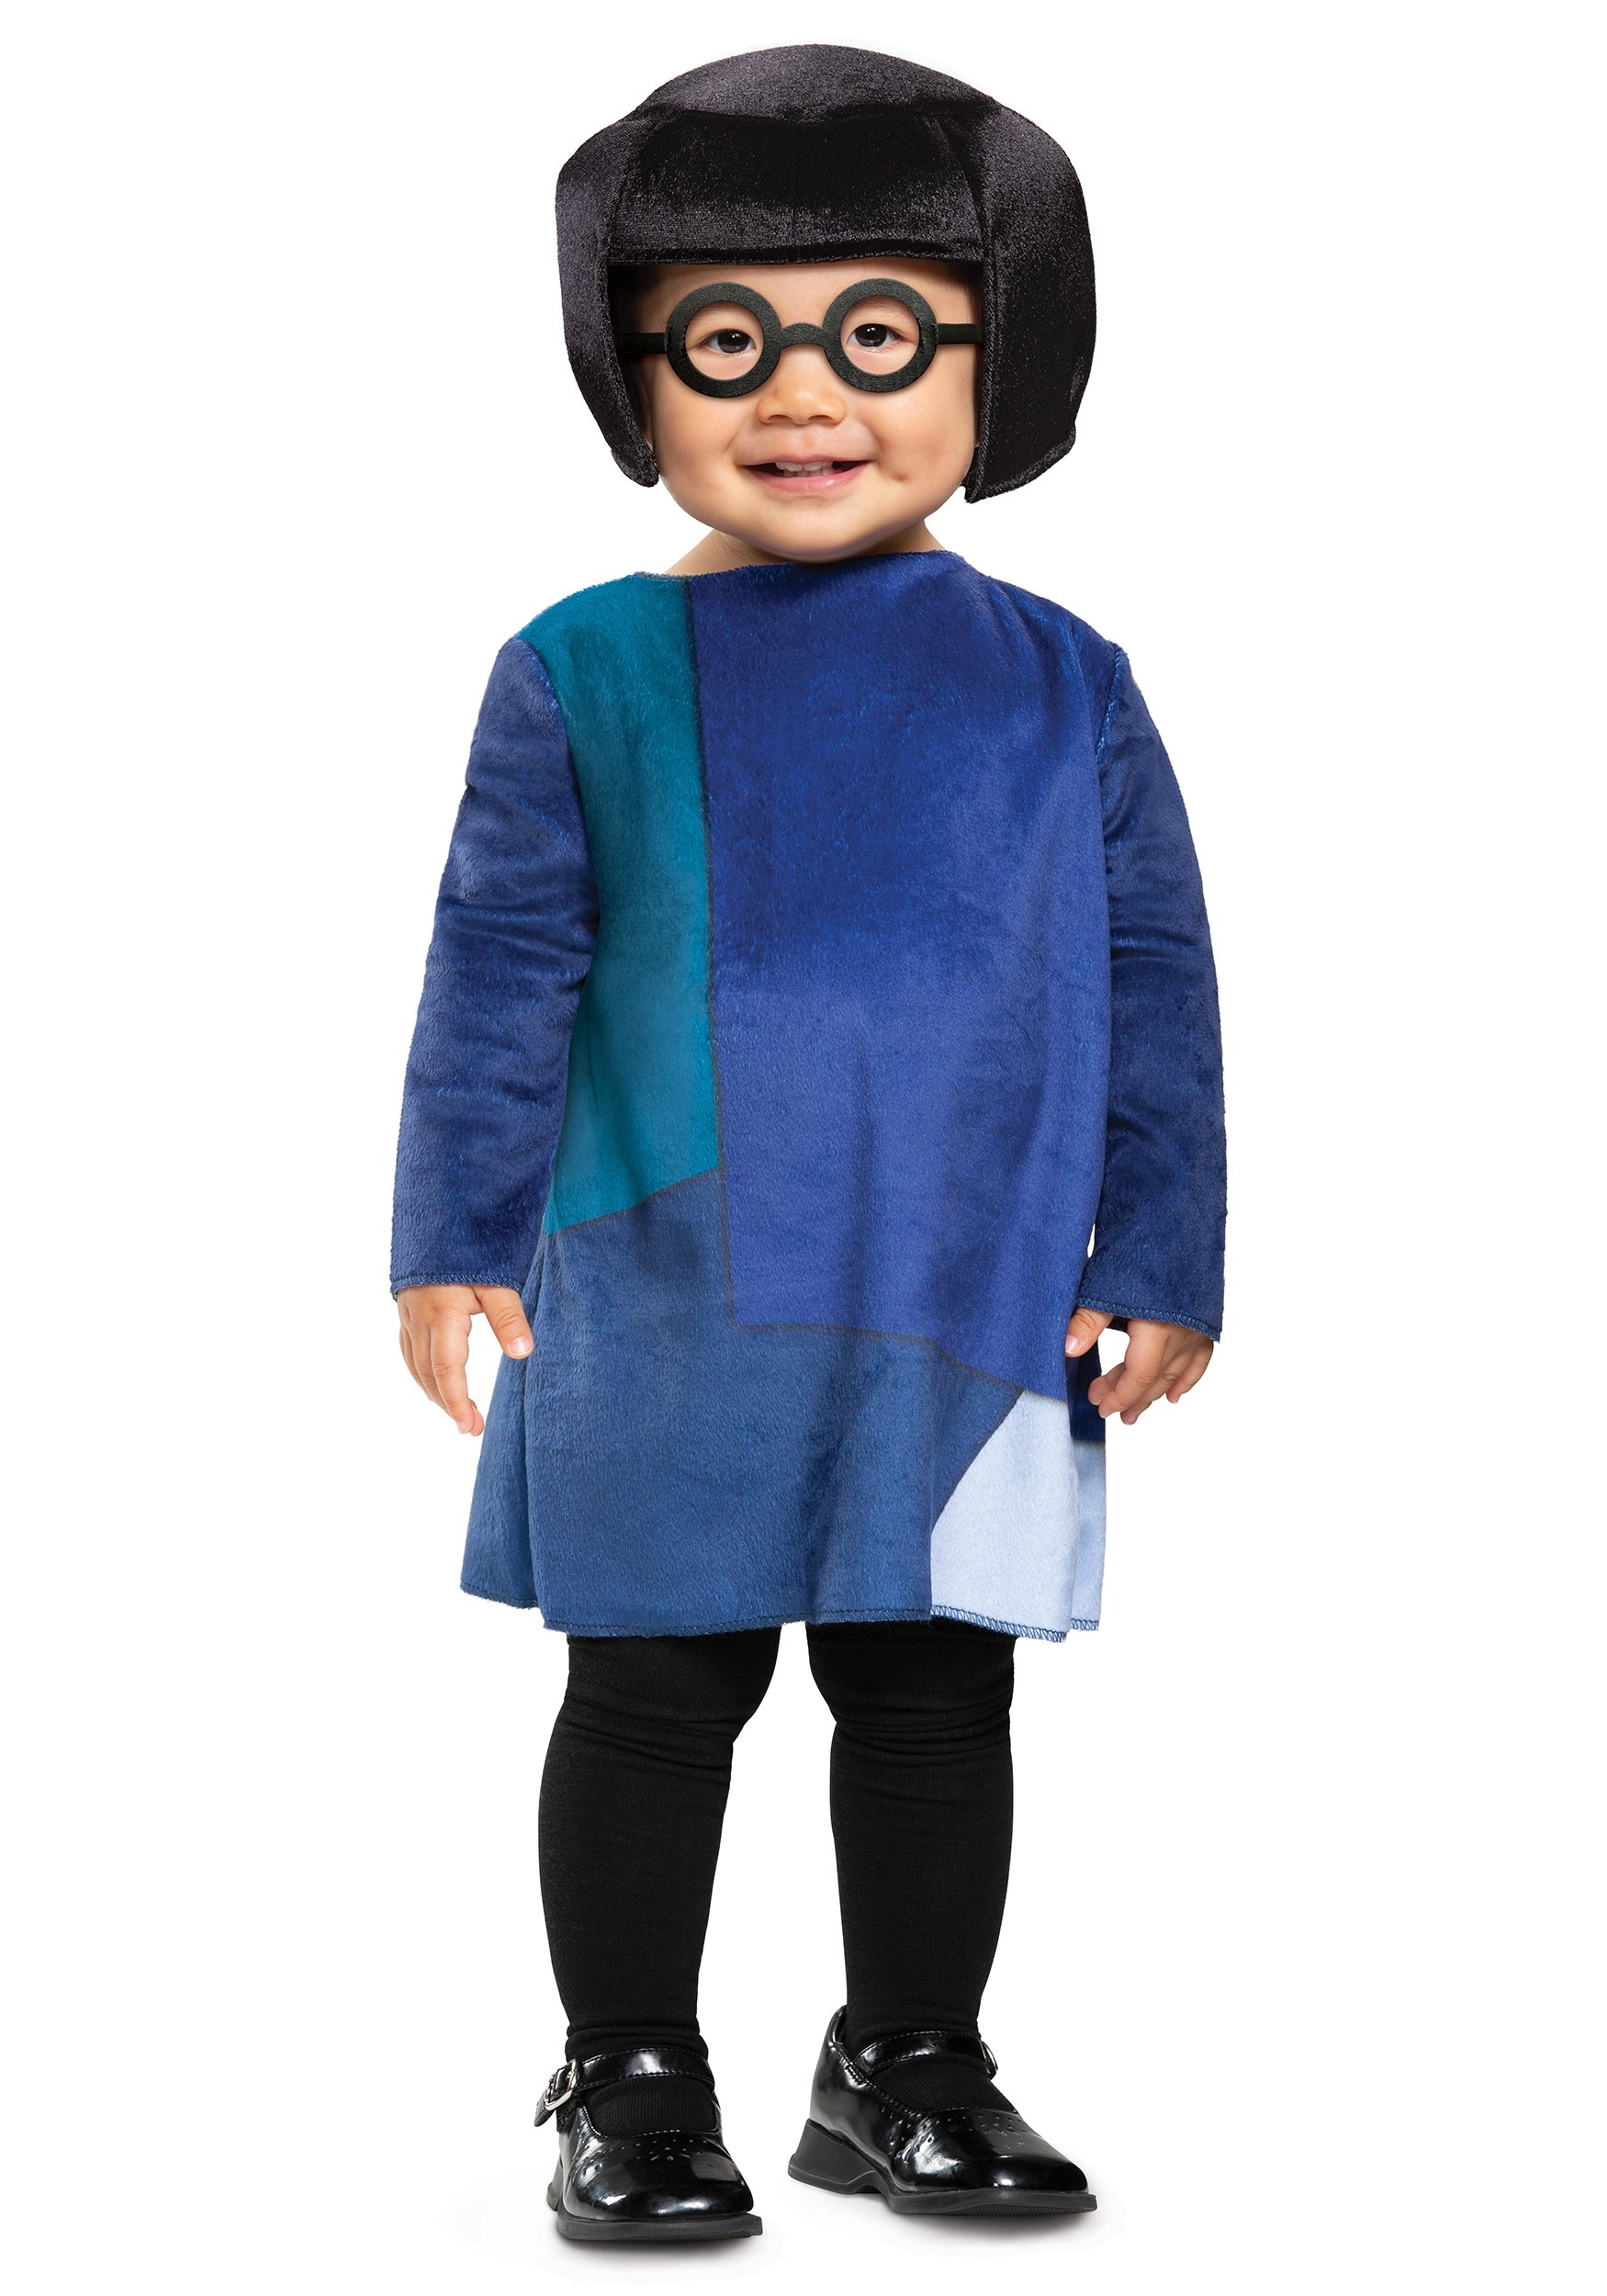 Disfraz de Mode de Incredibles Infant/Niño Edna Mode Multicolor